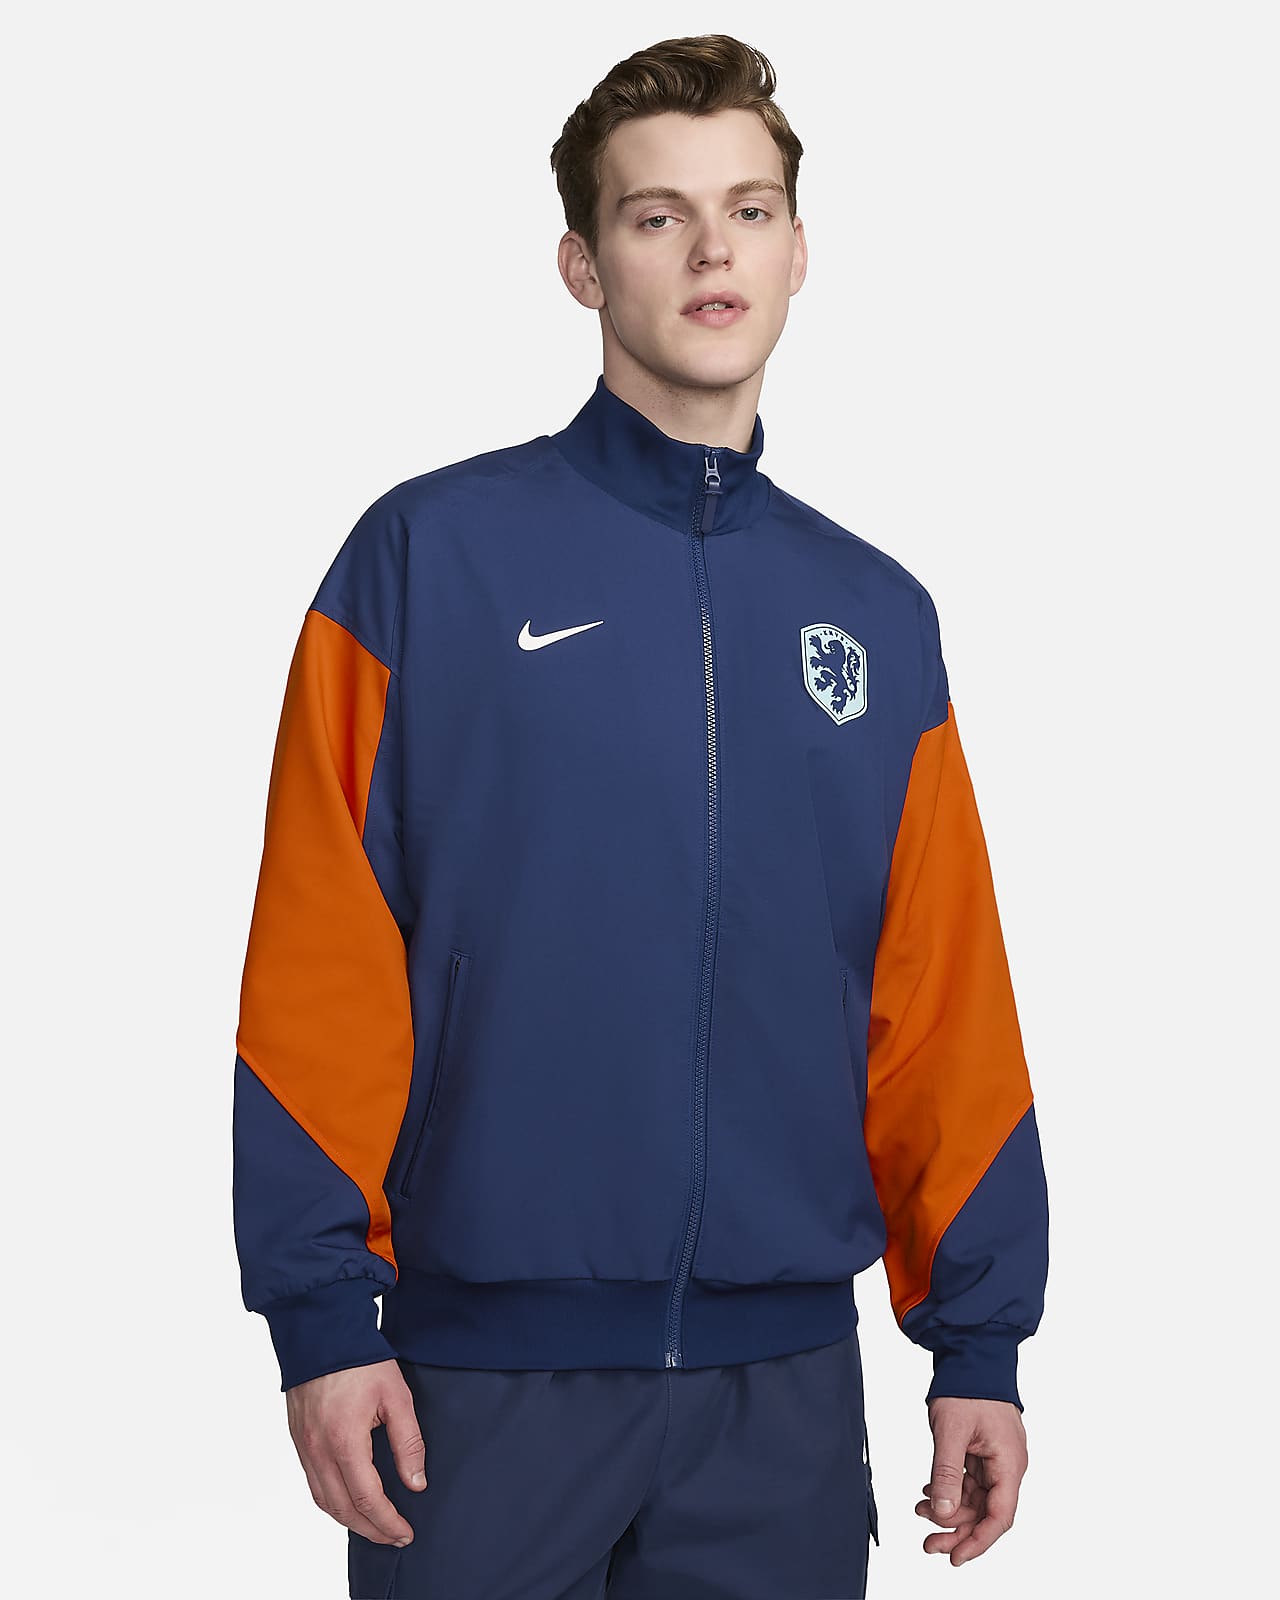 Hollanda Strike Nike Dri-FIT Erkek Futbol Ceketi